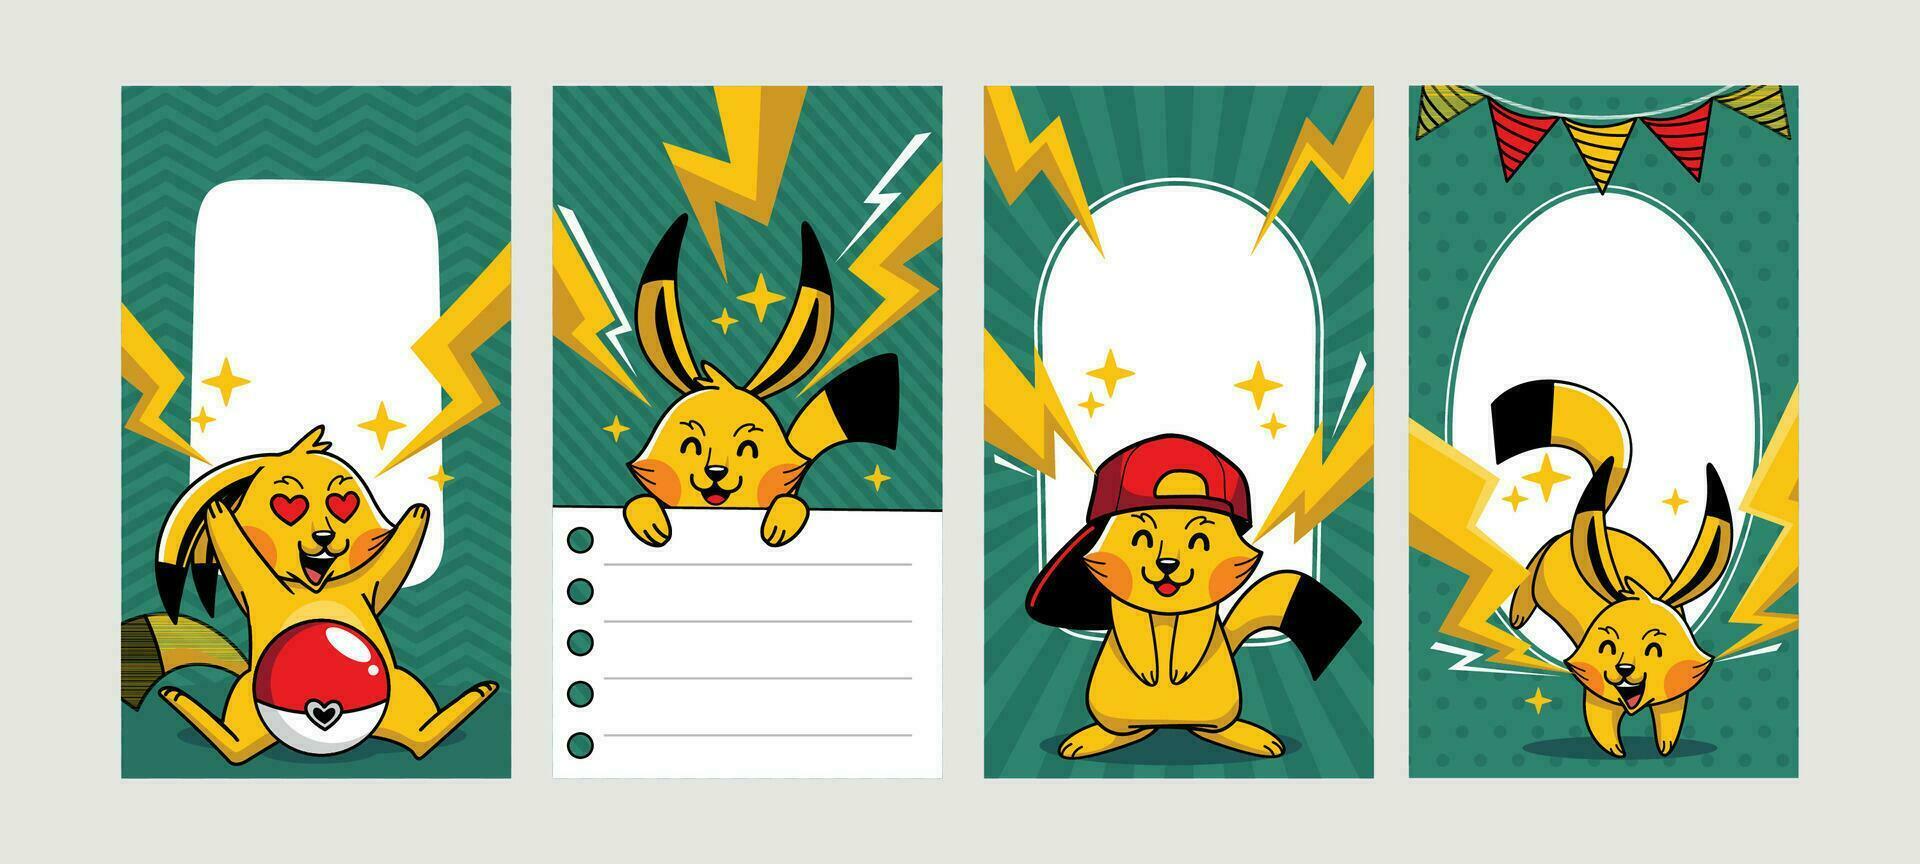 linda amarillo ratón con eléctrico poder para social medios de comunicación historia vector